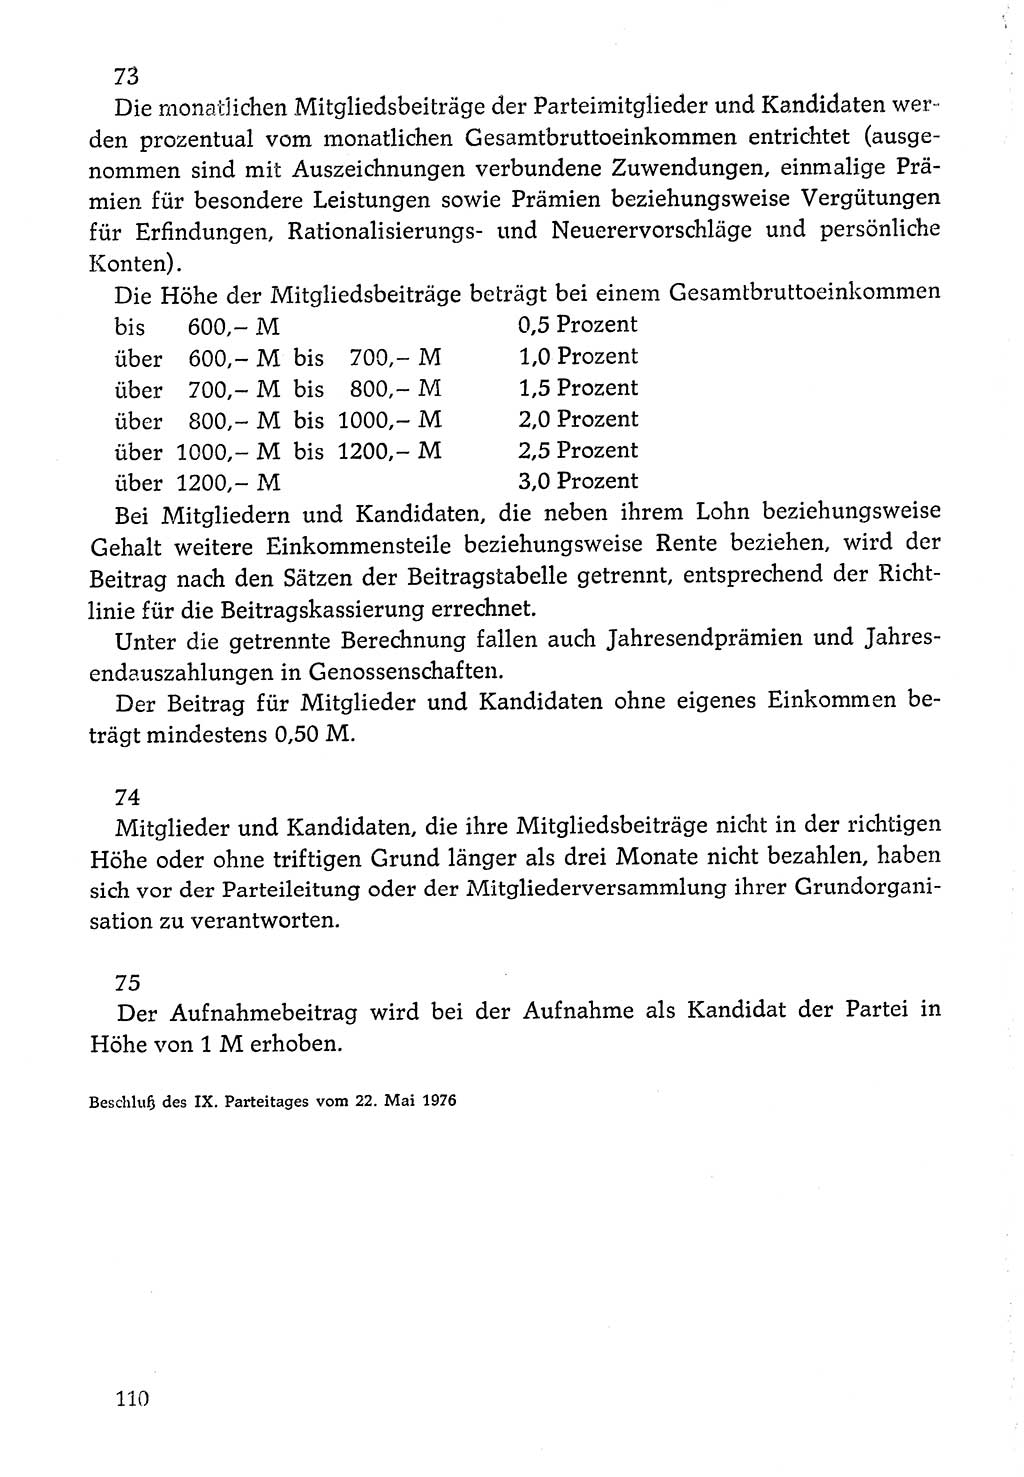 Dokumente der Sozialistischen Einheitspartei Deutschlands (SED) [Deutsche Demokratische Republik (DDR)] 1976-1977, Seite 110 (Dok. SED DDR 1976-1977, S. 110)